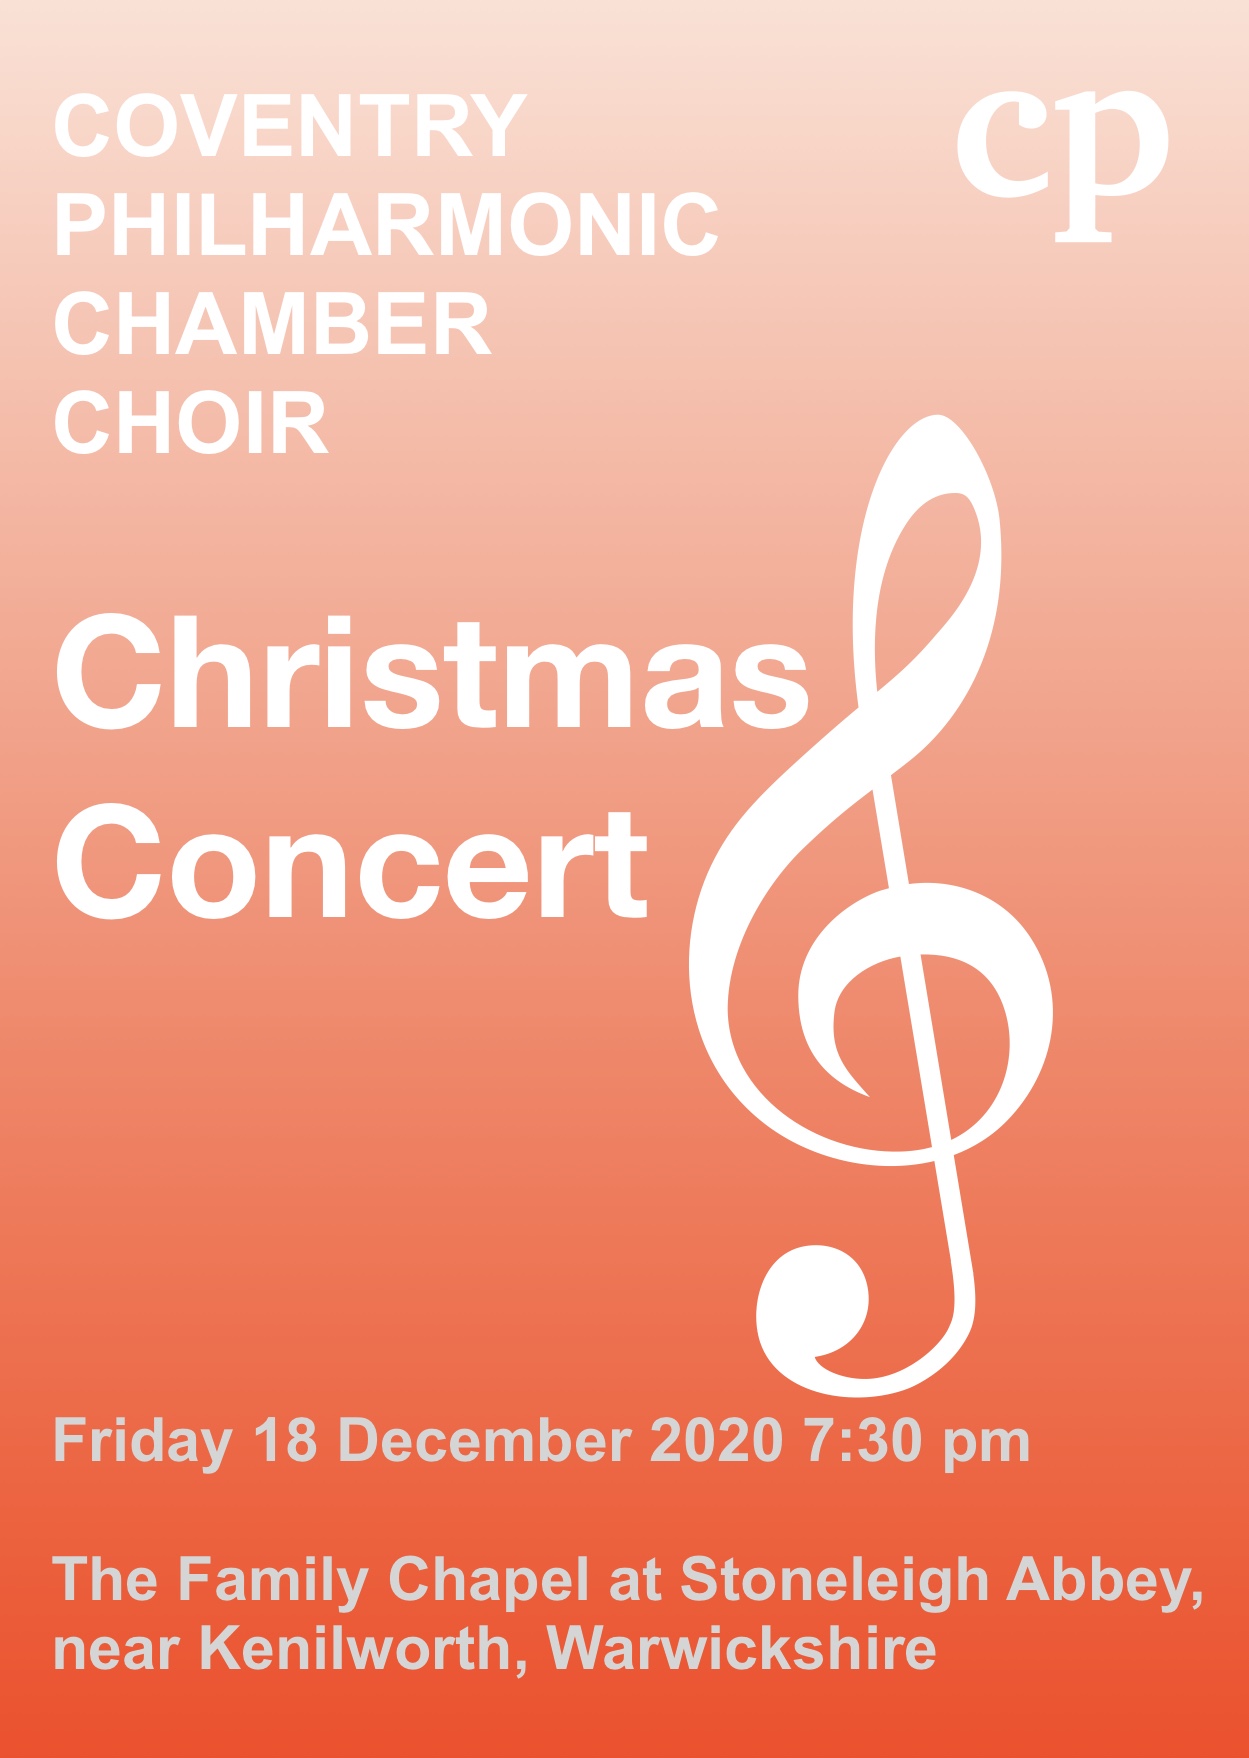 Chamber Choir concert at Stoneleigh Abbey